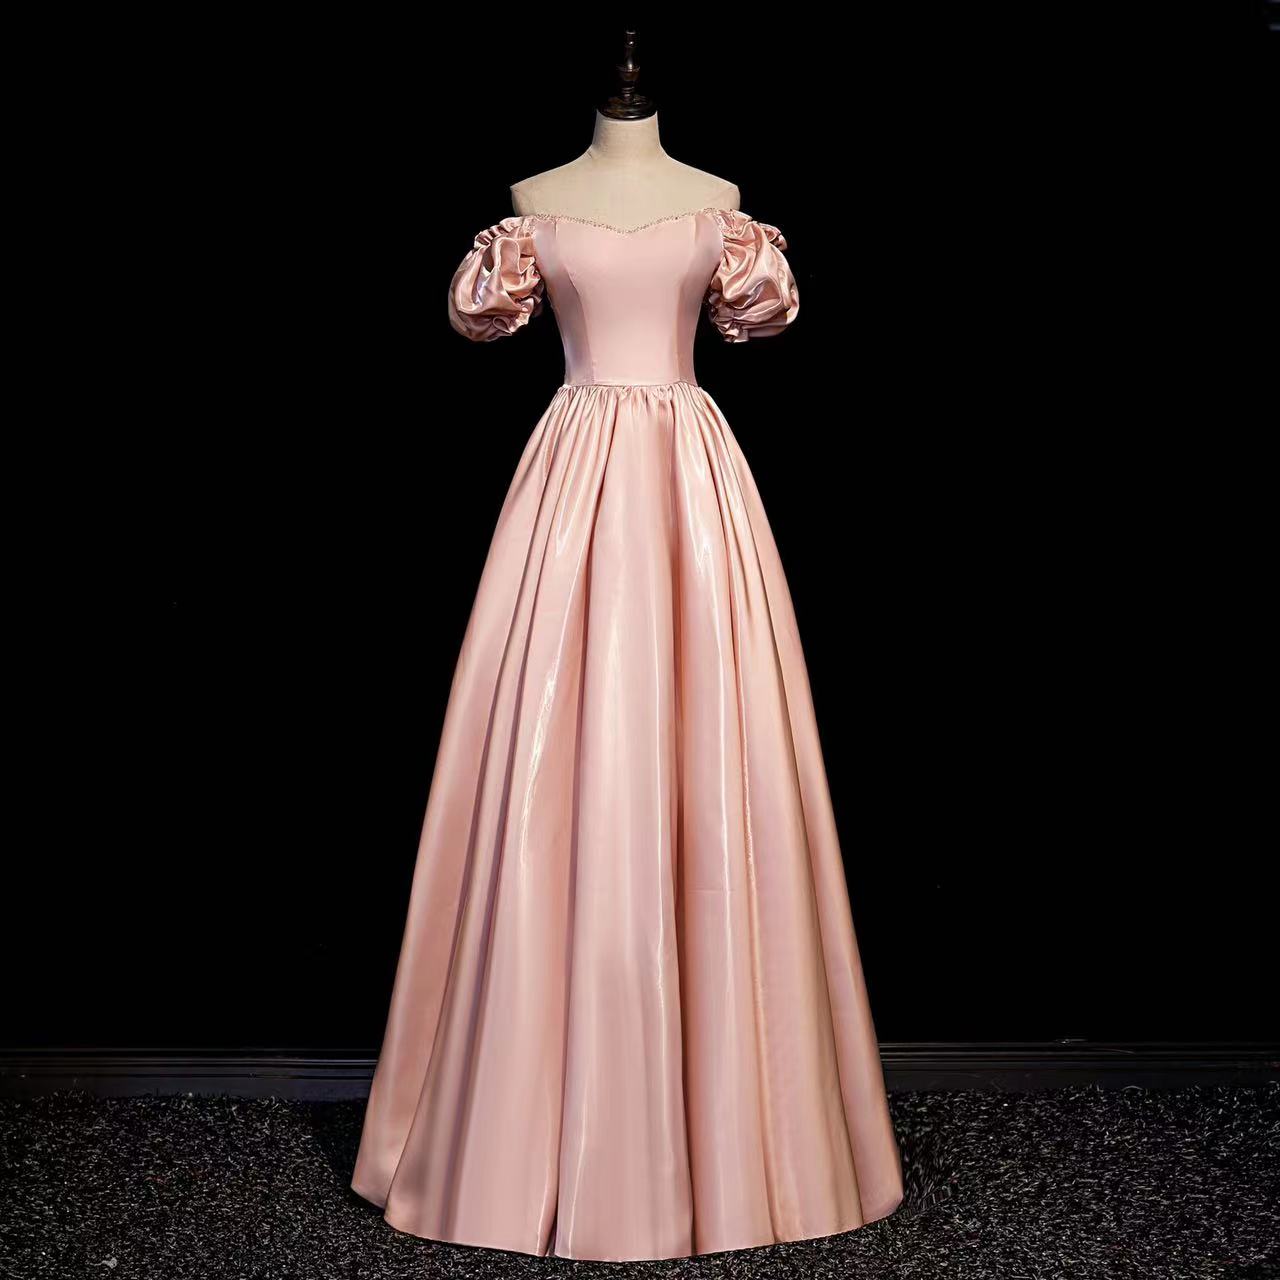 Pink Prom Dress, Class Evening Dress, Off-the-shoulder Wedding Dress, Princess Party Dress